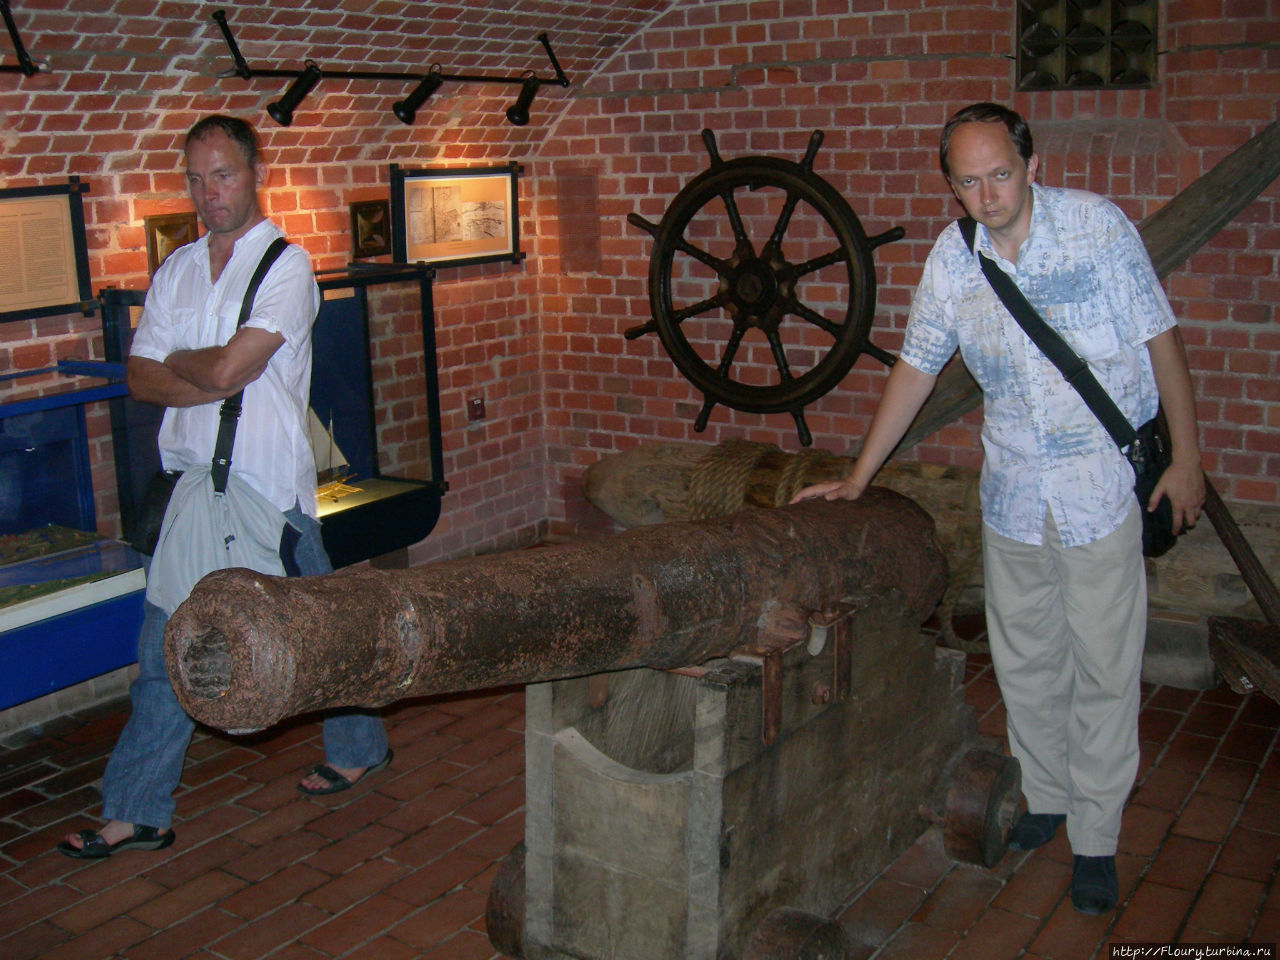 Музей, где Нептун открывает свои секркты Клайпеда, Литва